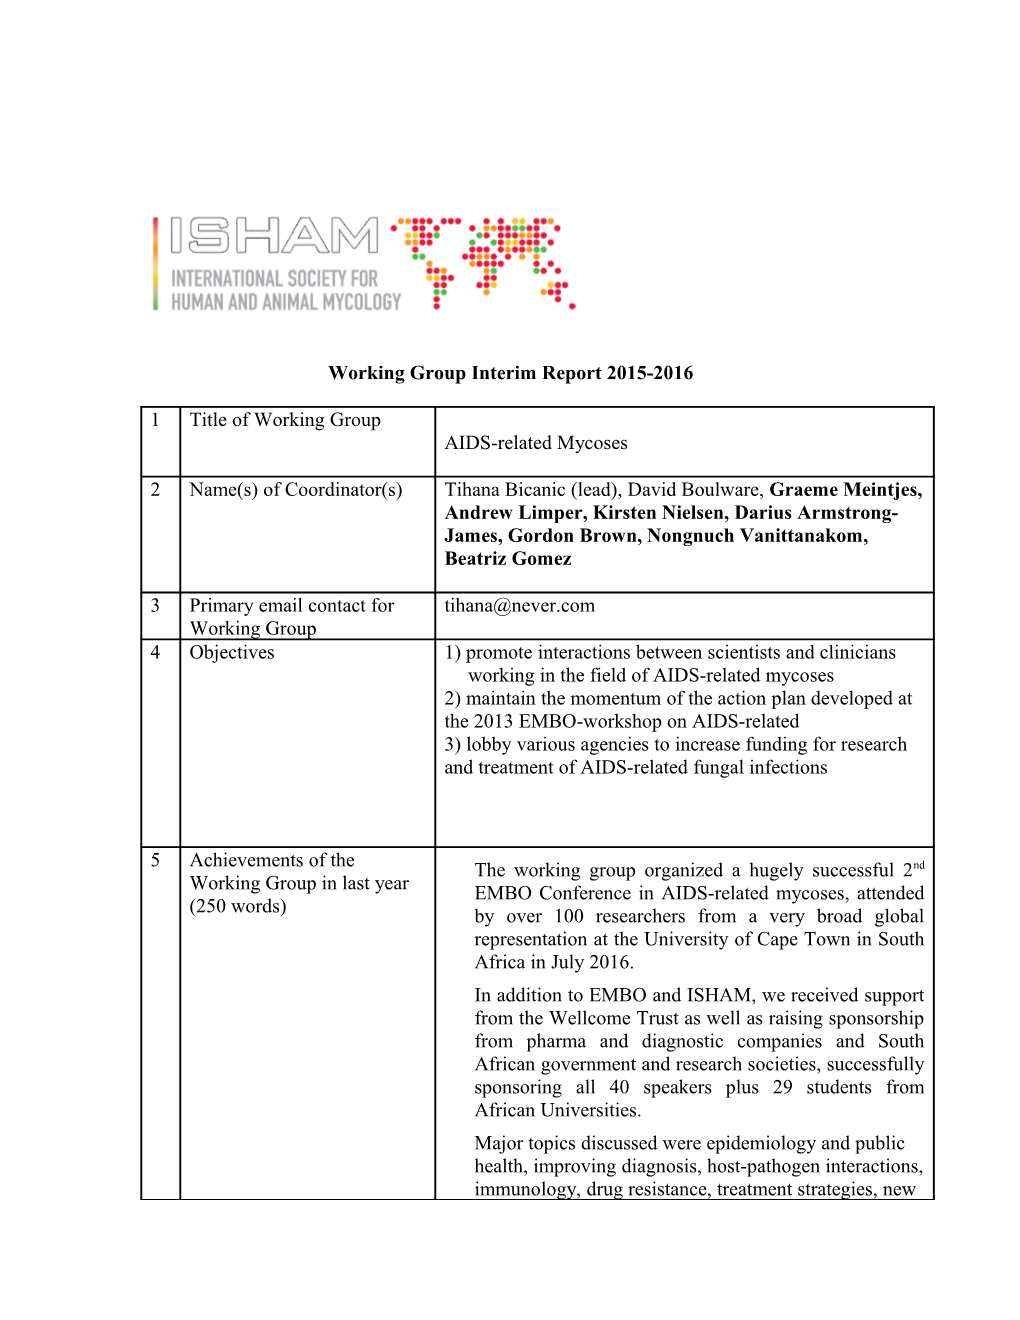 Interim Report of the Working Groups Under ISHAM